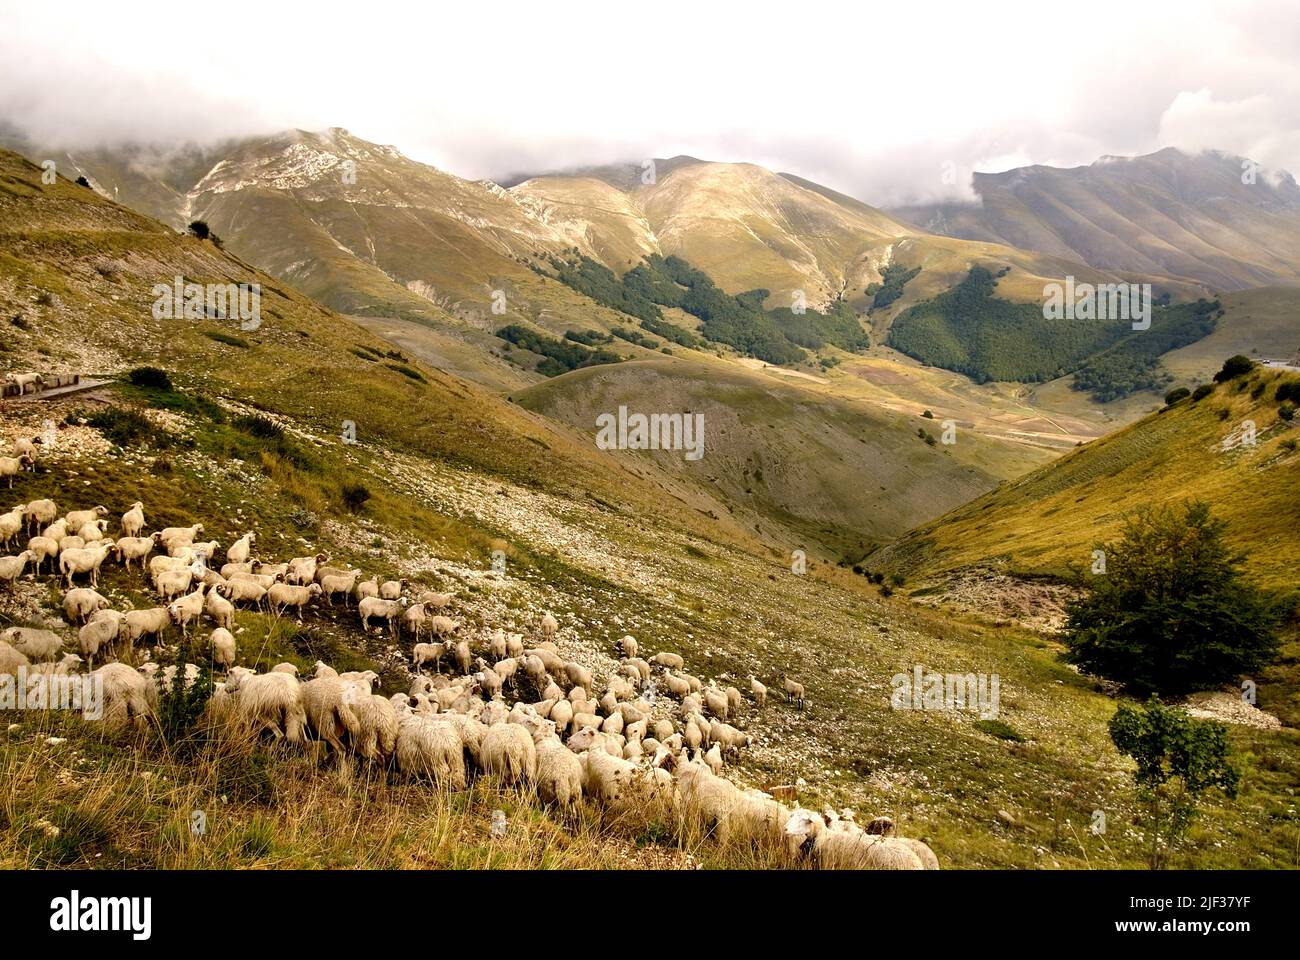 grazing flock of sheep in mountain scenery, Parco Nazionale dei Monti Sibillini, Italy, Marche, Monti Sibillini National Park Stock Photo